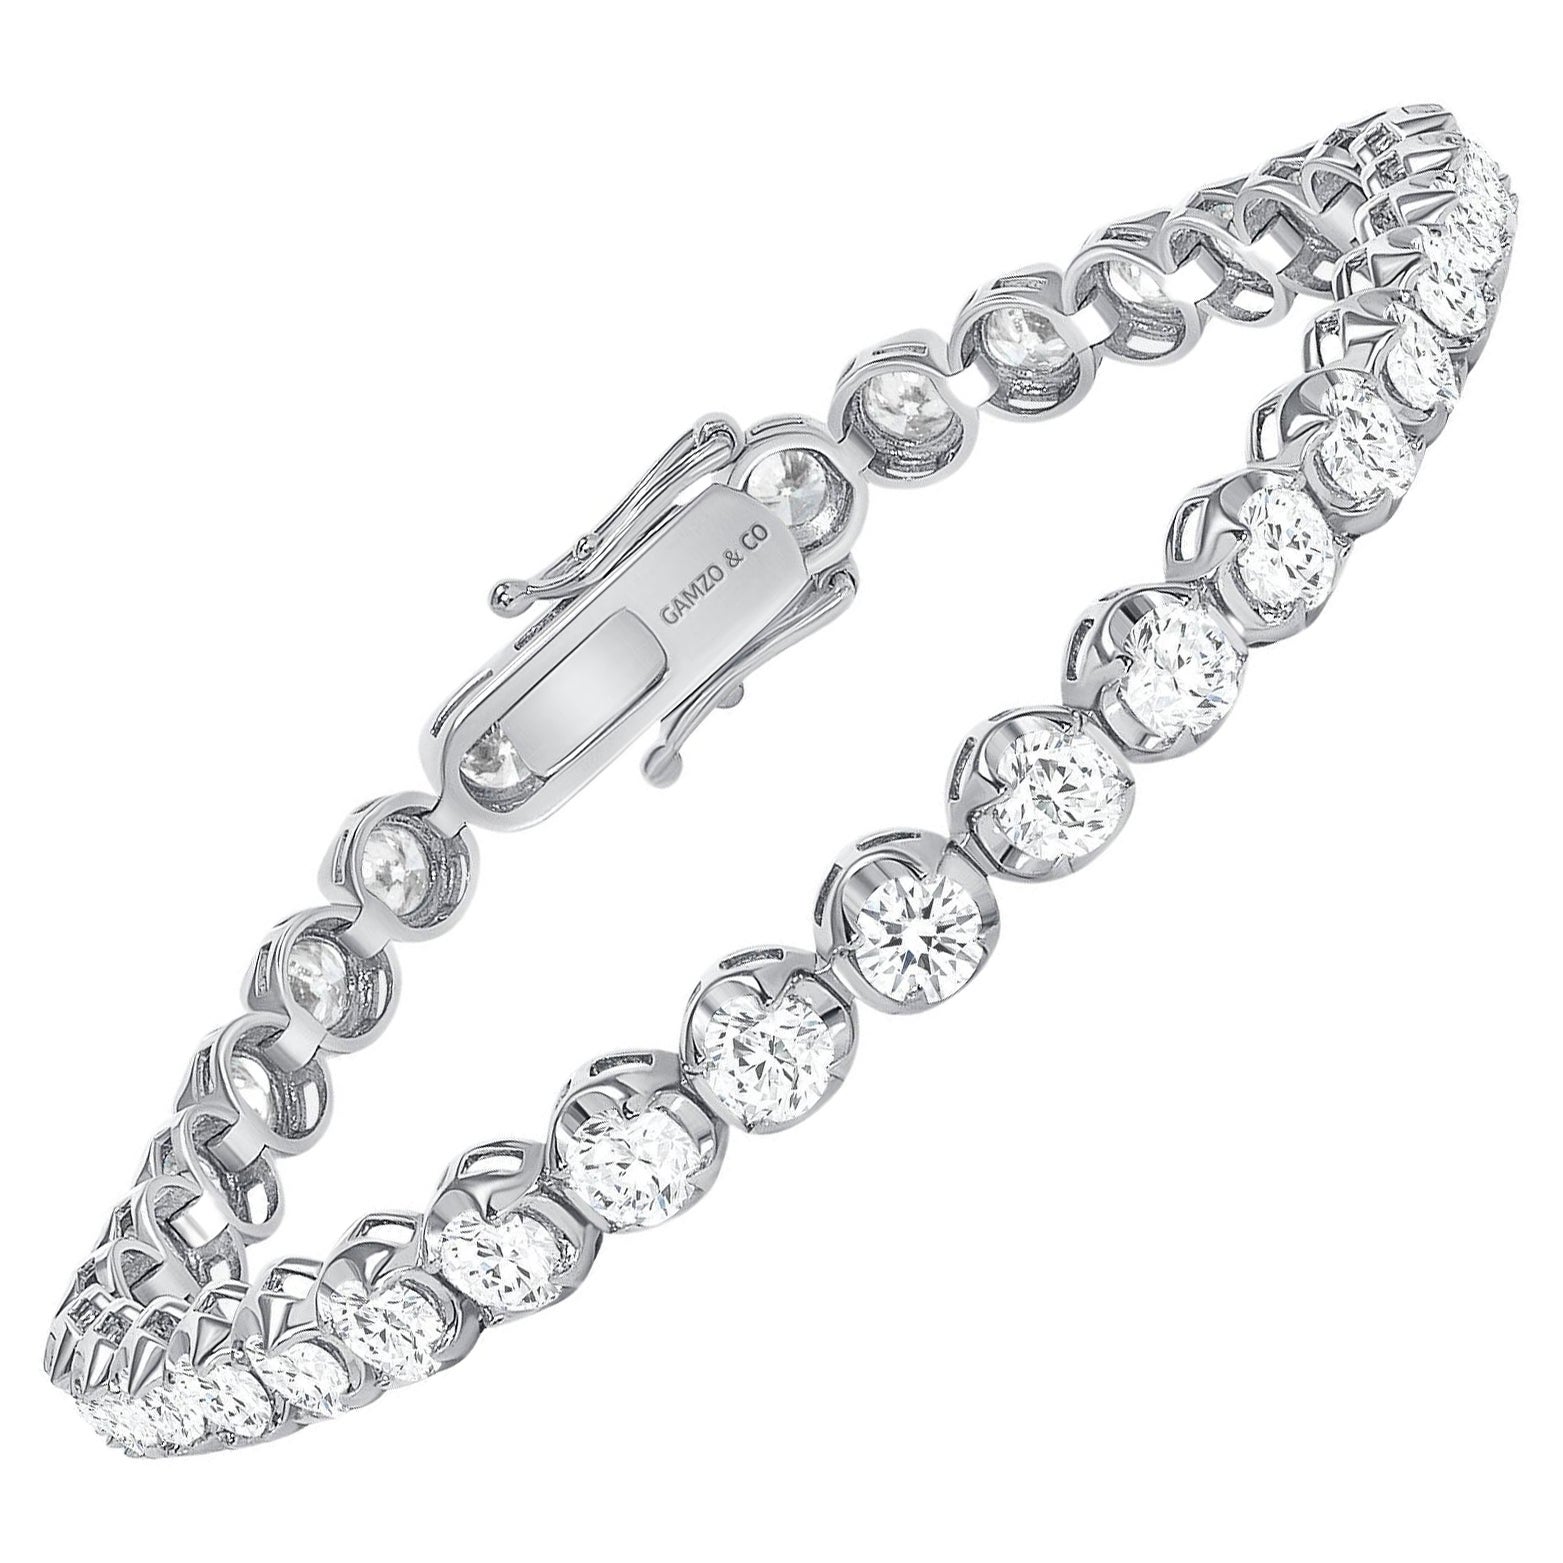 7.5 Inches 14k White Gold 5 Carat Round Diamond Illusion Setting Tennis Bracelet